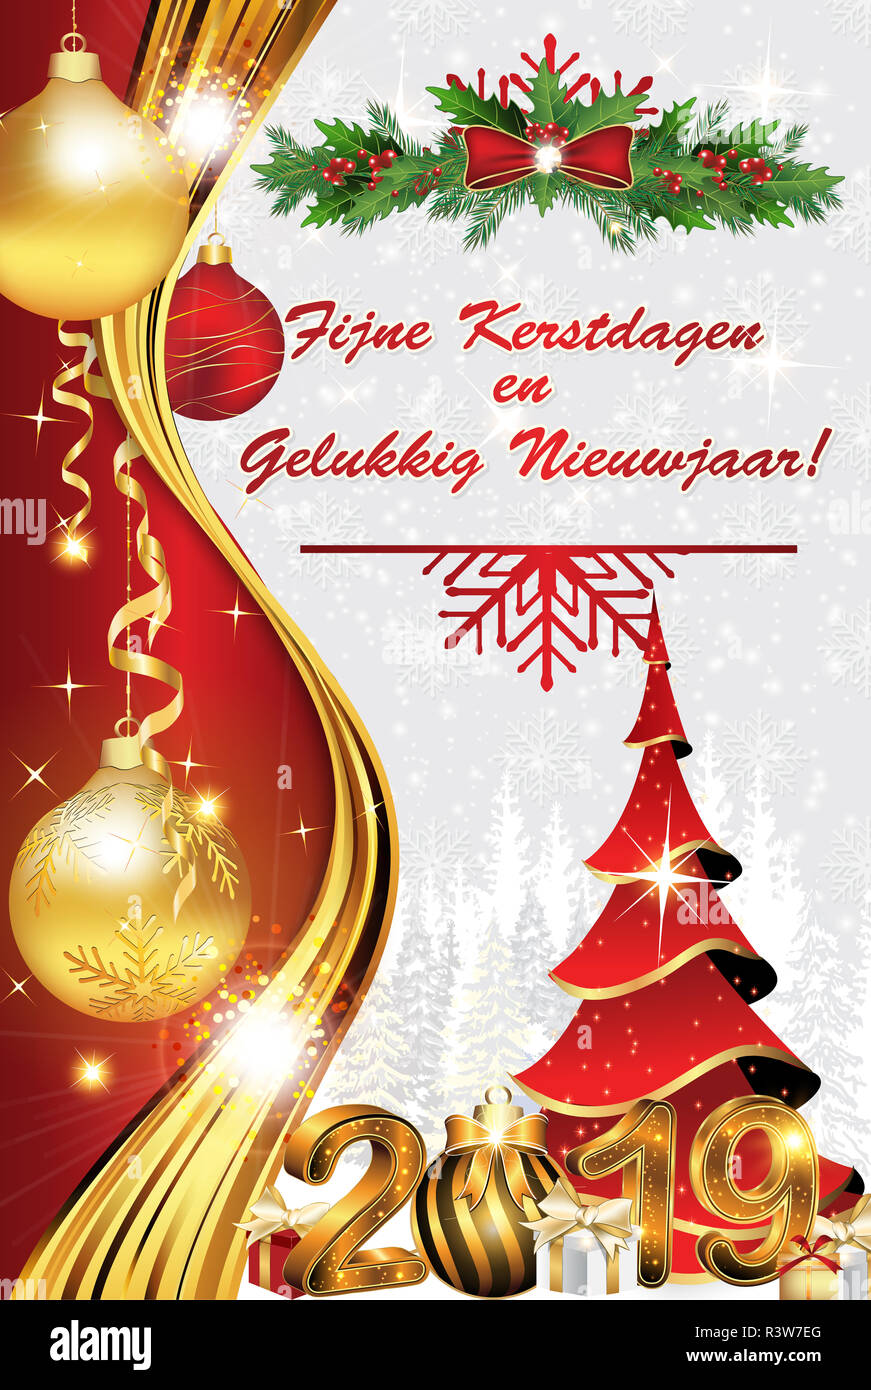 Auguri Di Buon Natale Olandese.Auguriamo A Tutti Un Buon Natale E Un Felice Anno Nuovo 2019 Scritto In Olandese Il Messaggio Di Saluto Aziendale Card Per La Stagione Delle Vacanze Foto Stock Alamy